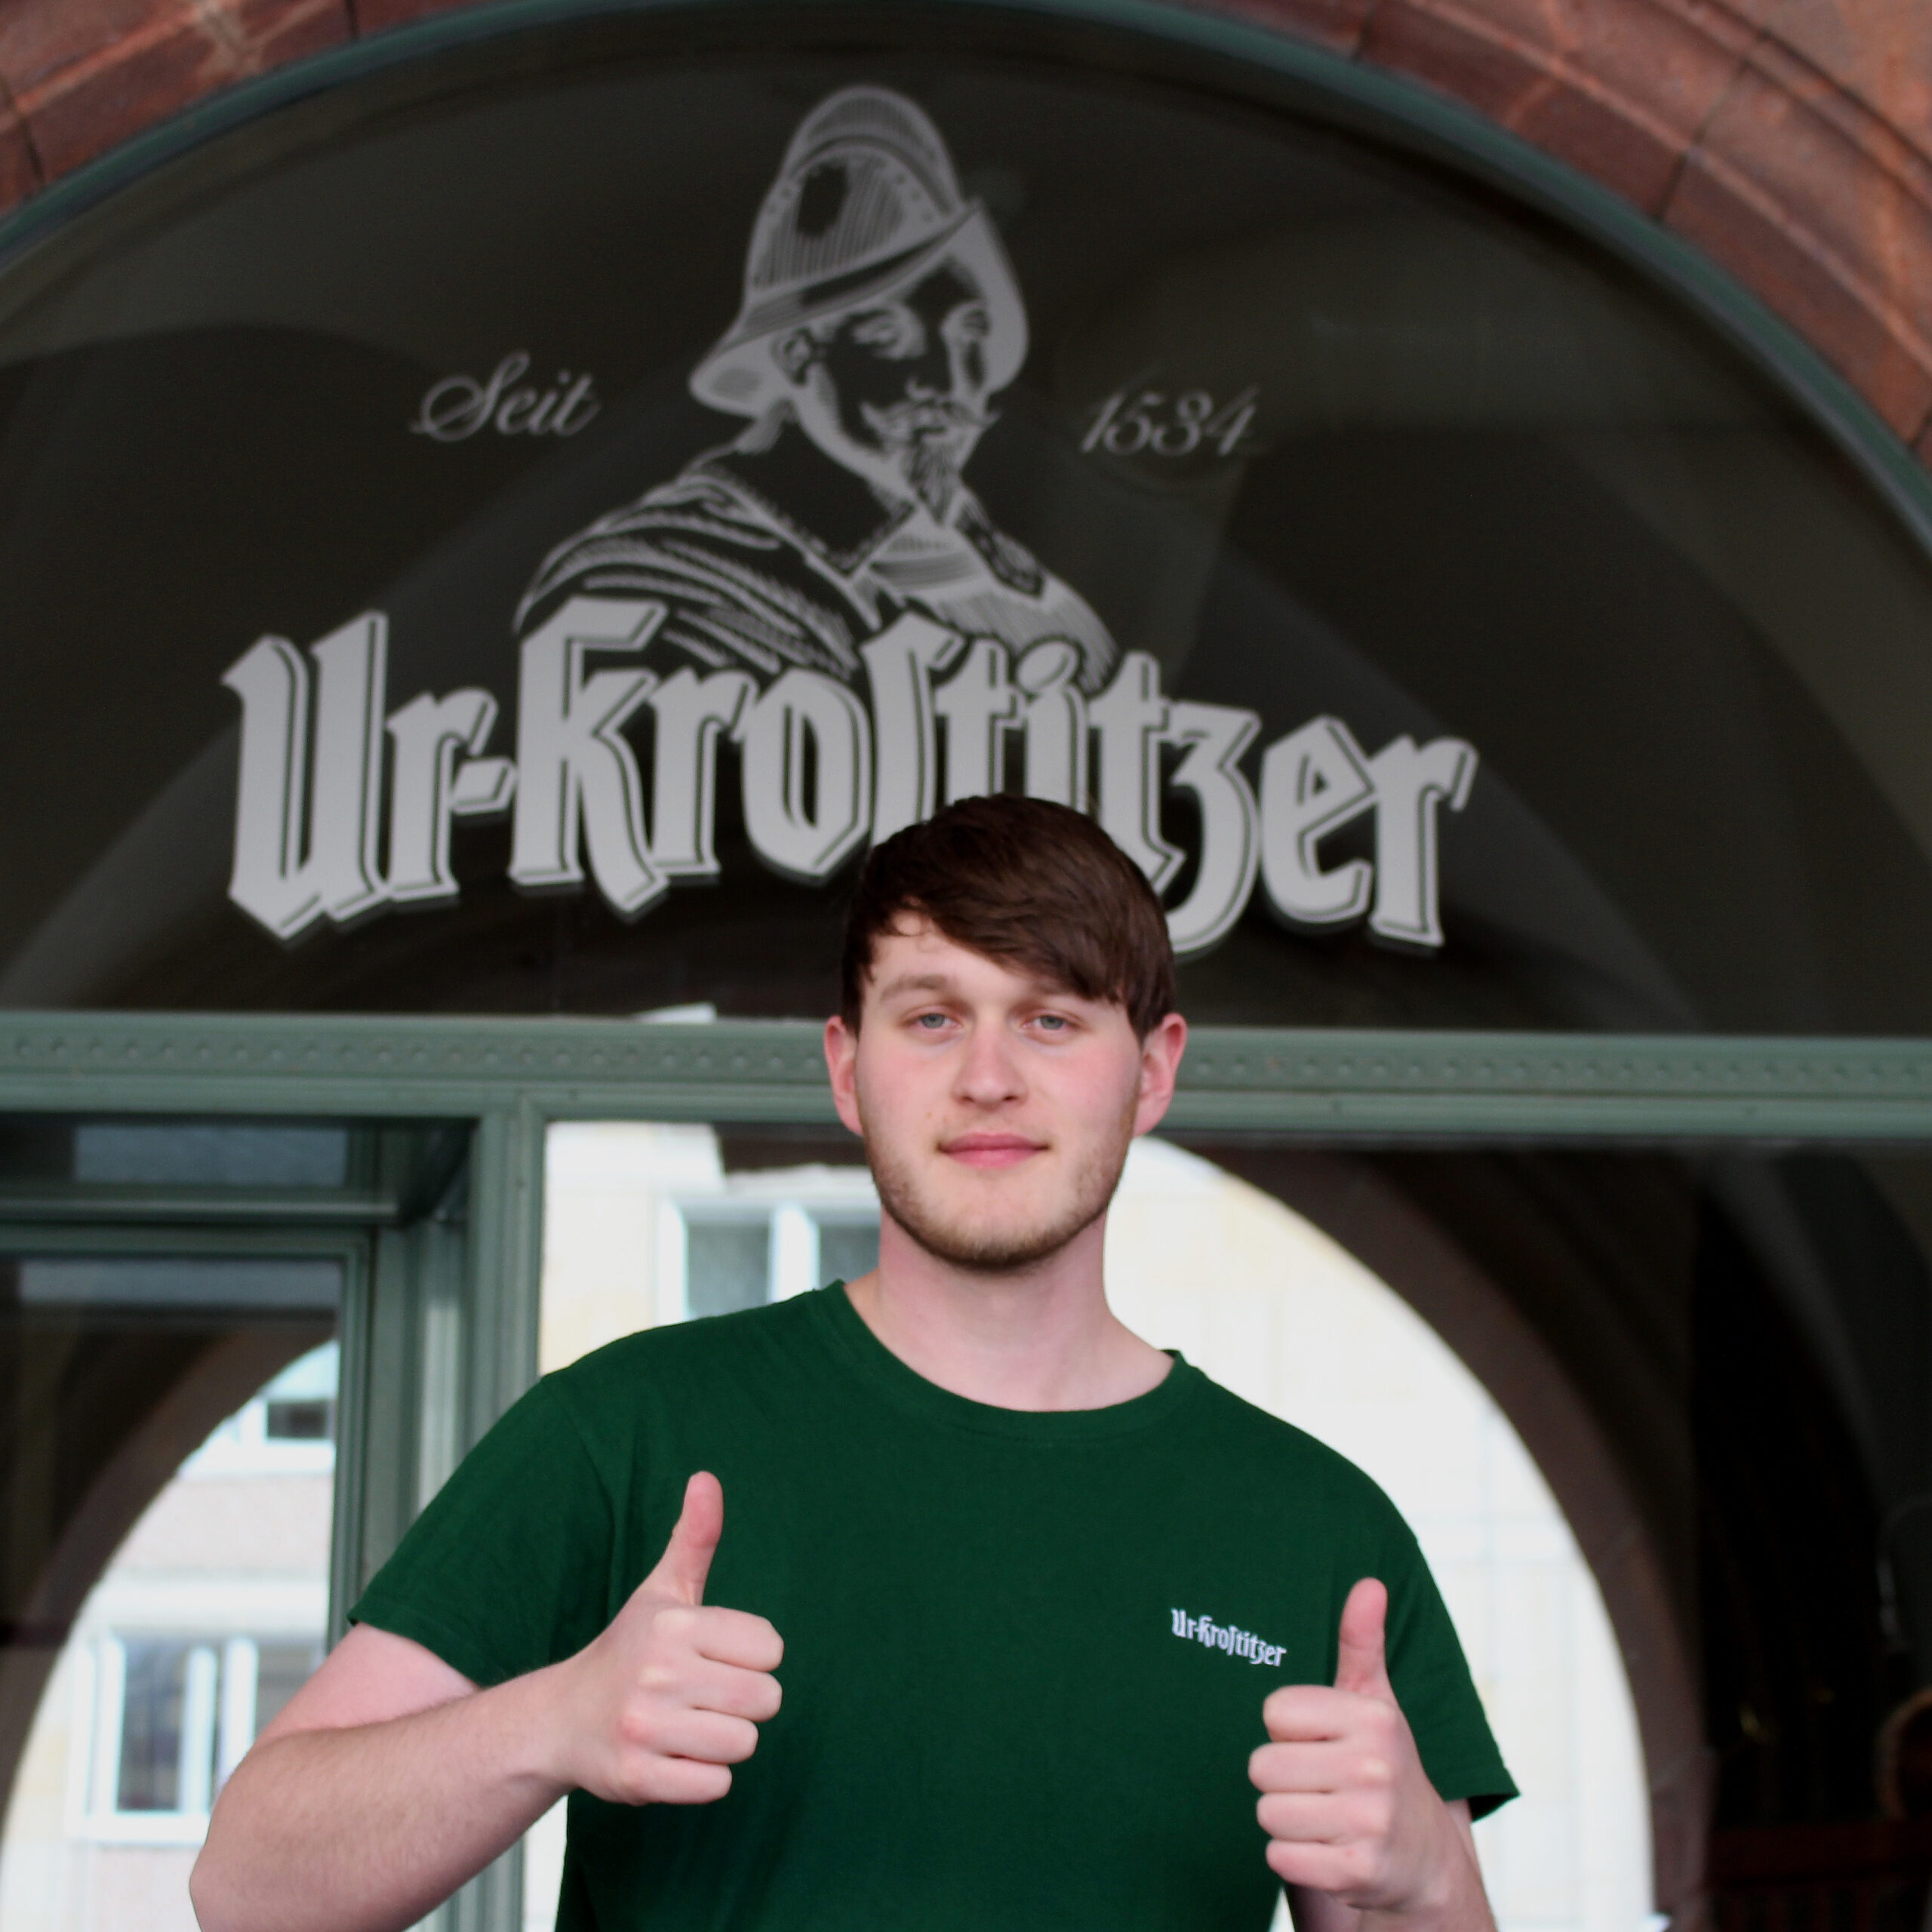 Kevin Meißner in front of the Ur-Krostitzer Shop in Leipzig